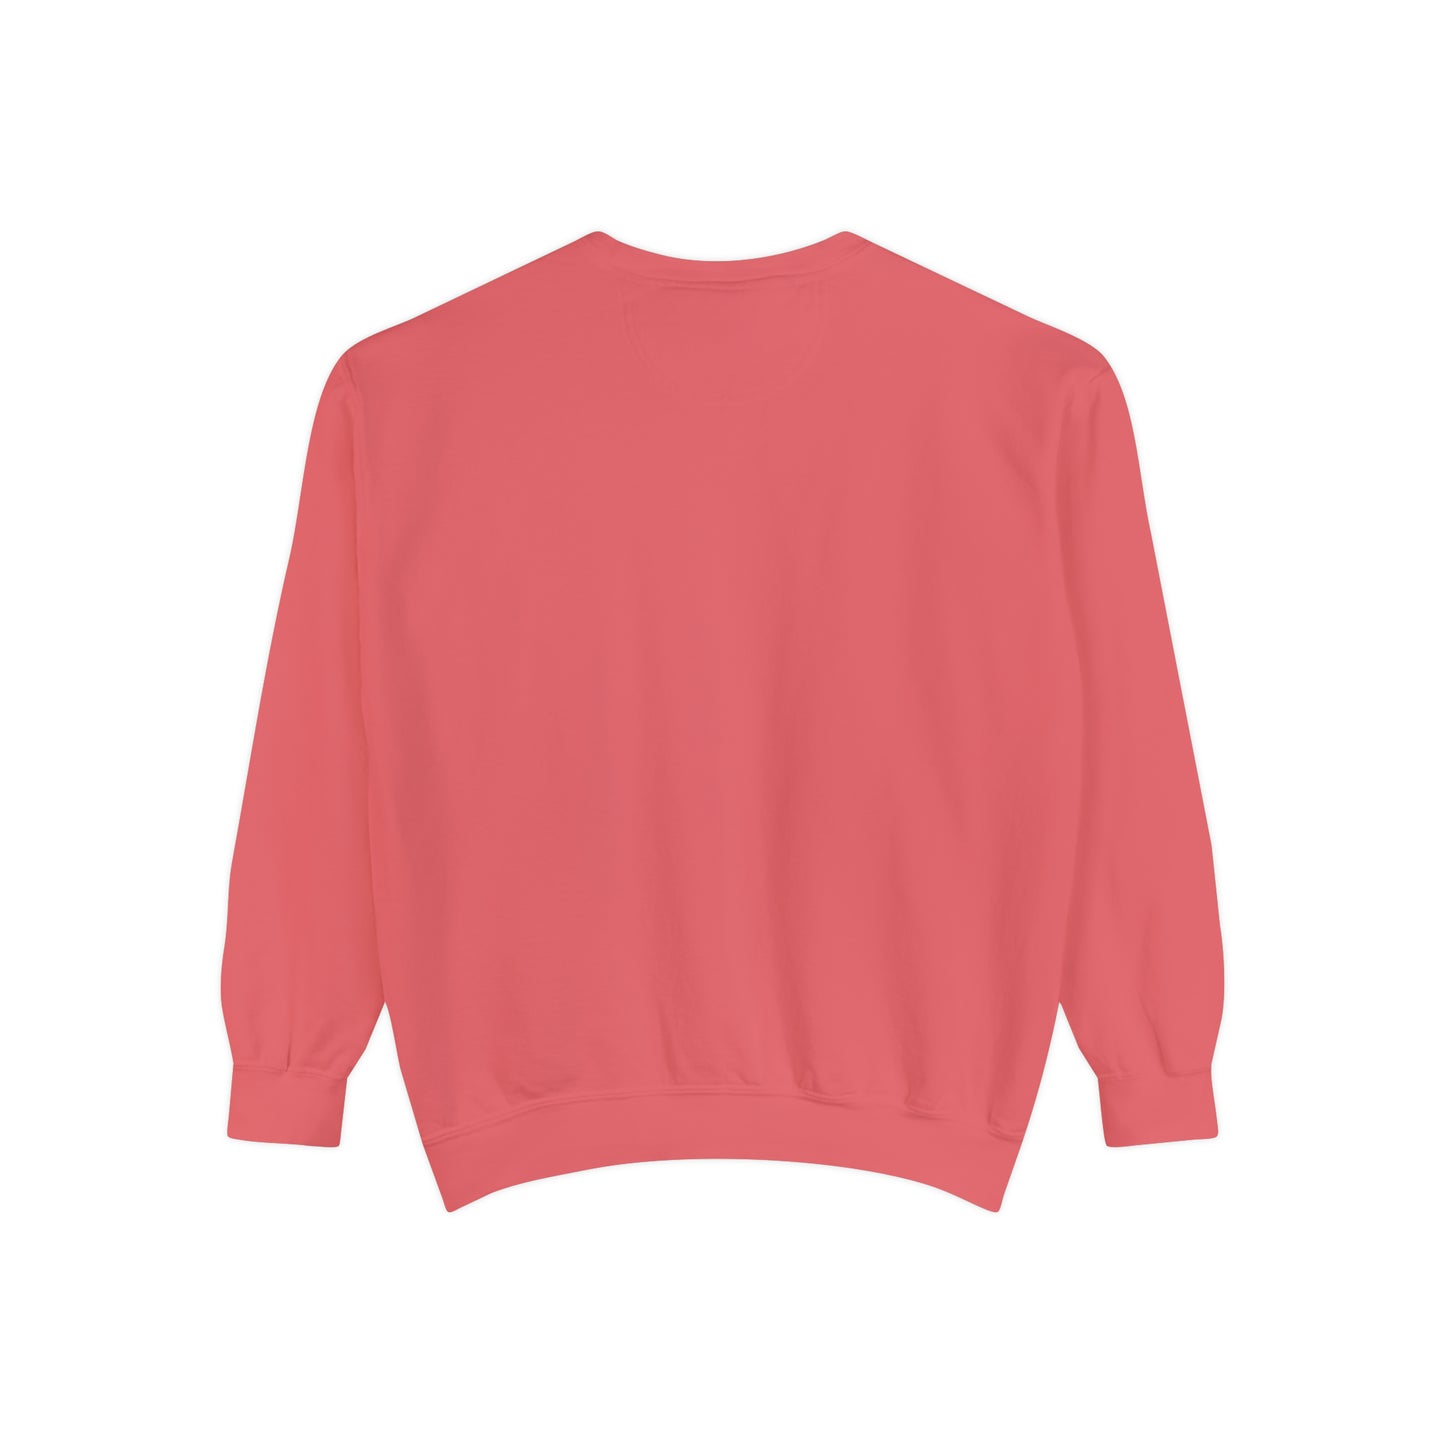 "Succa For Love" Comfort Colors Sweatshirt | Valentine's Sweatshirt for Plant Lover | Funny Valentine's Sweatshirt for Plant Lady